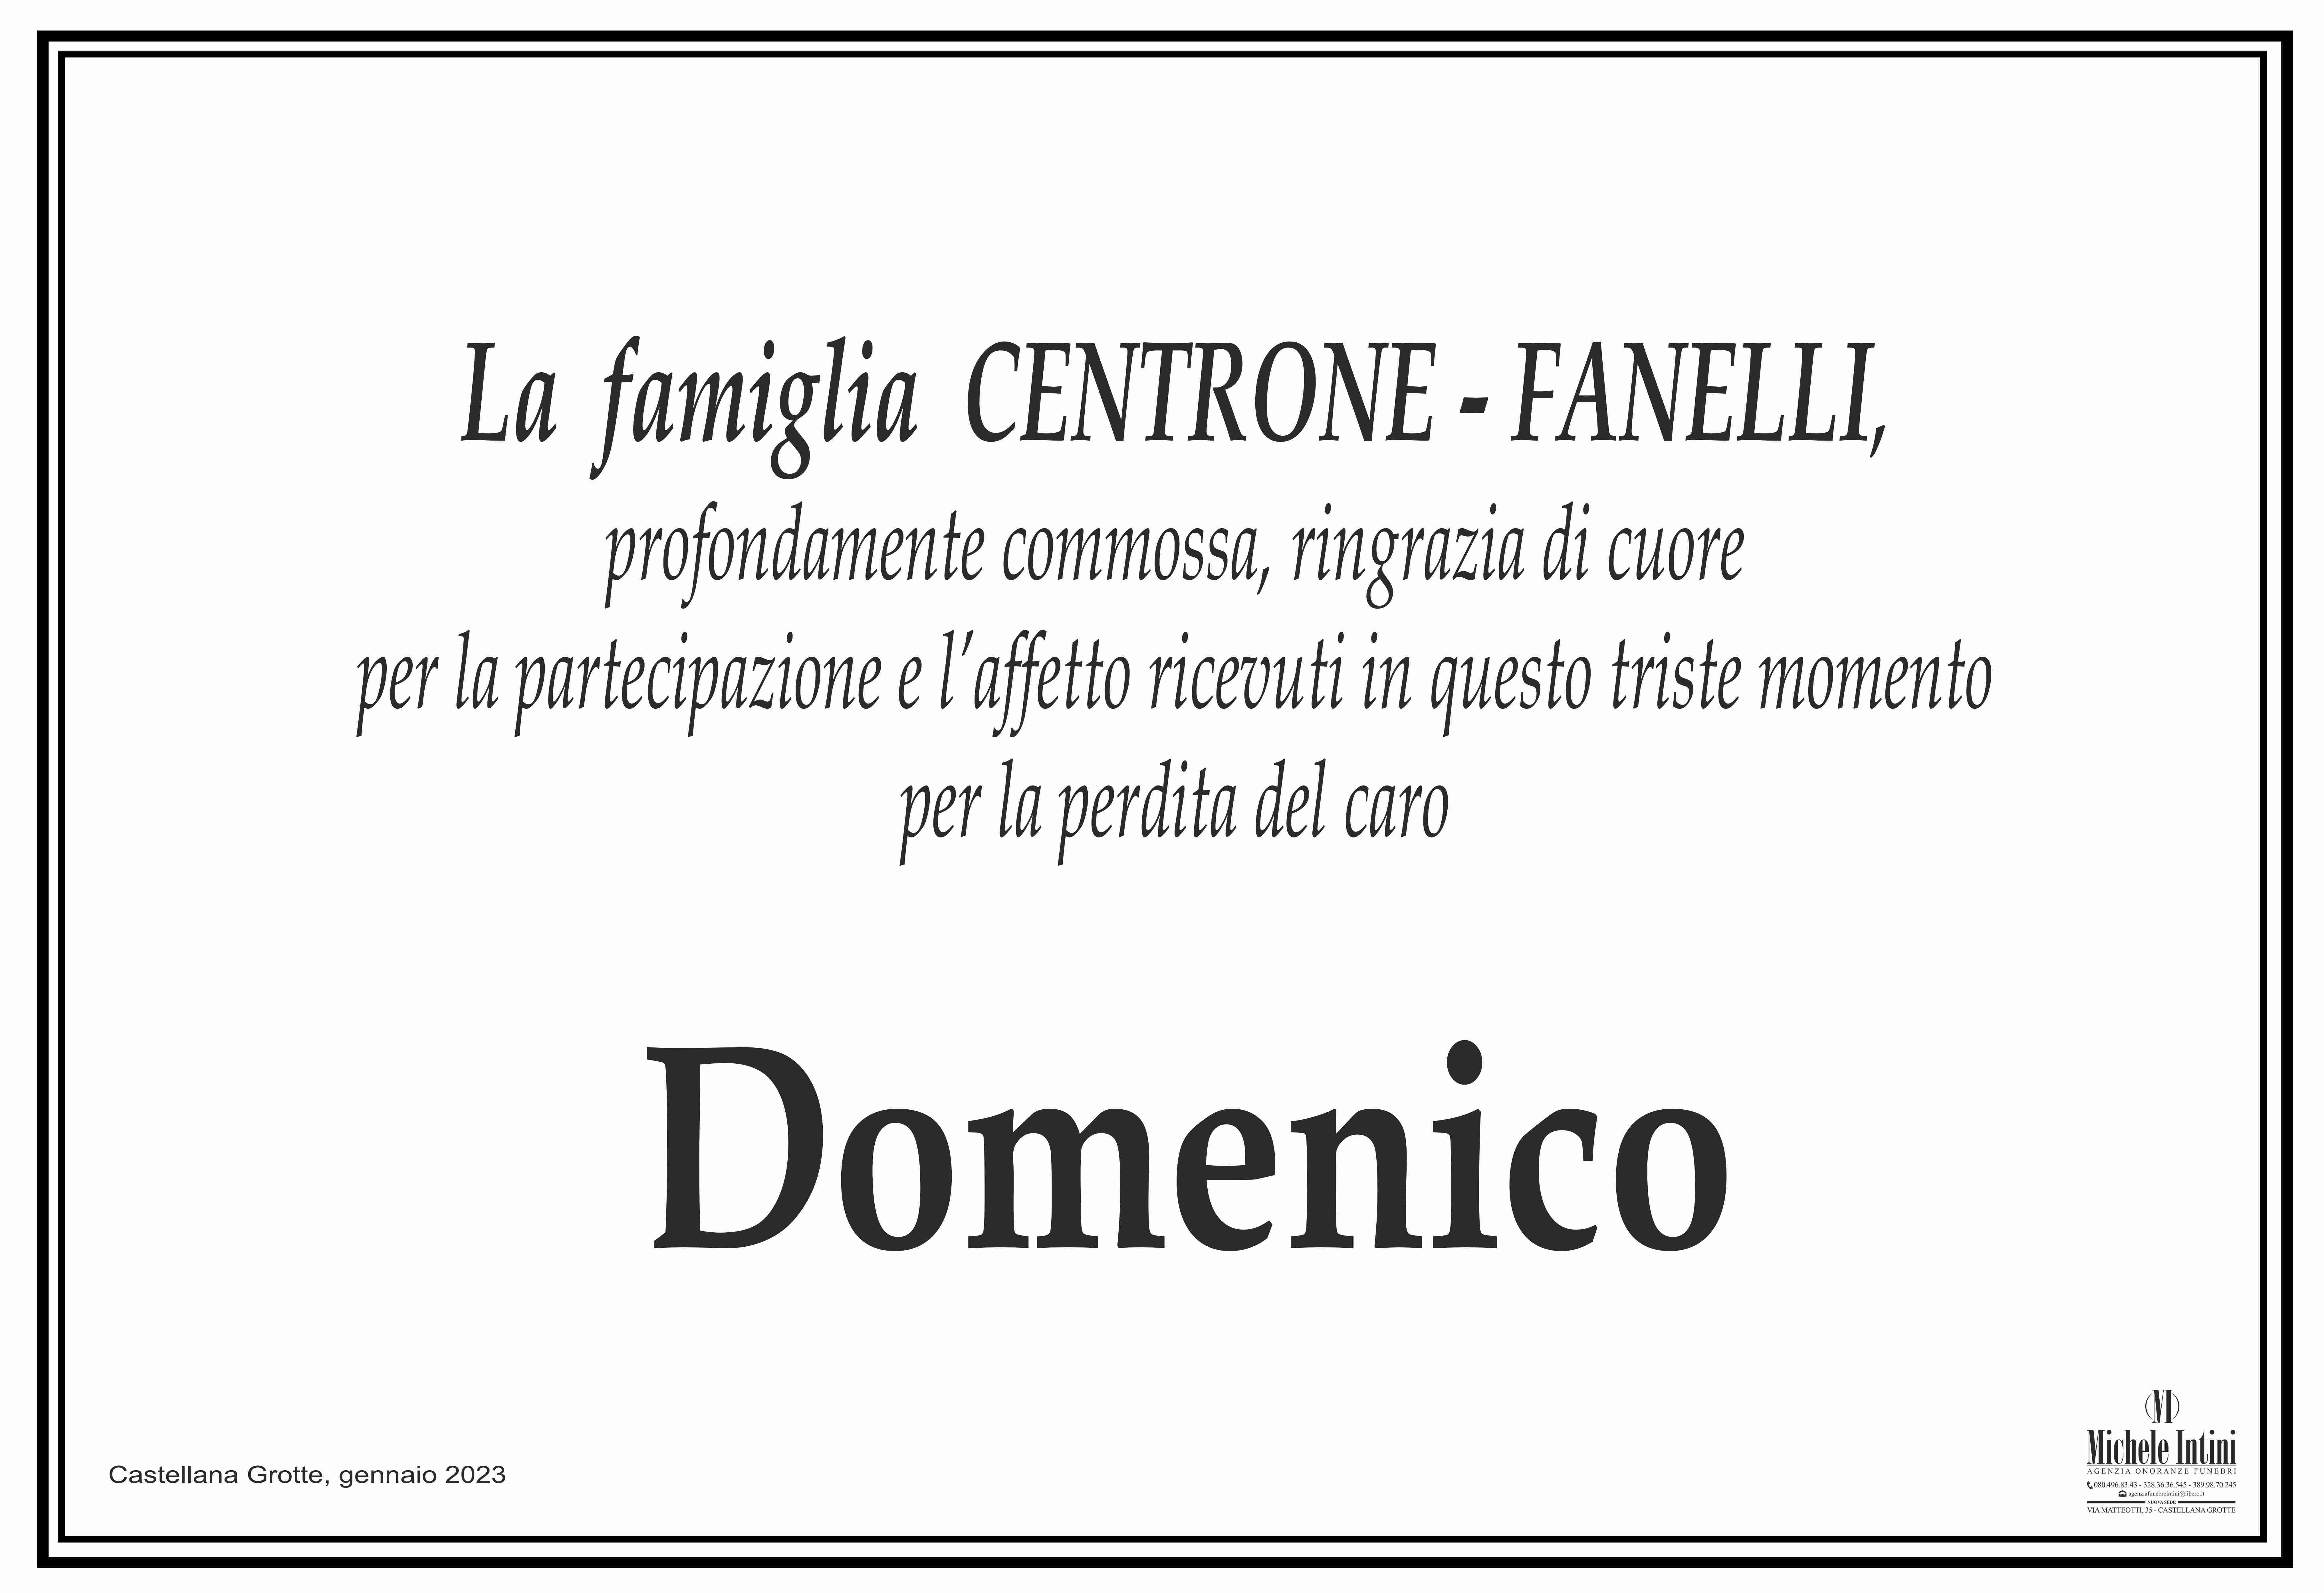 Domenico Centrone